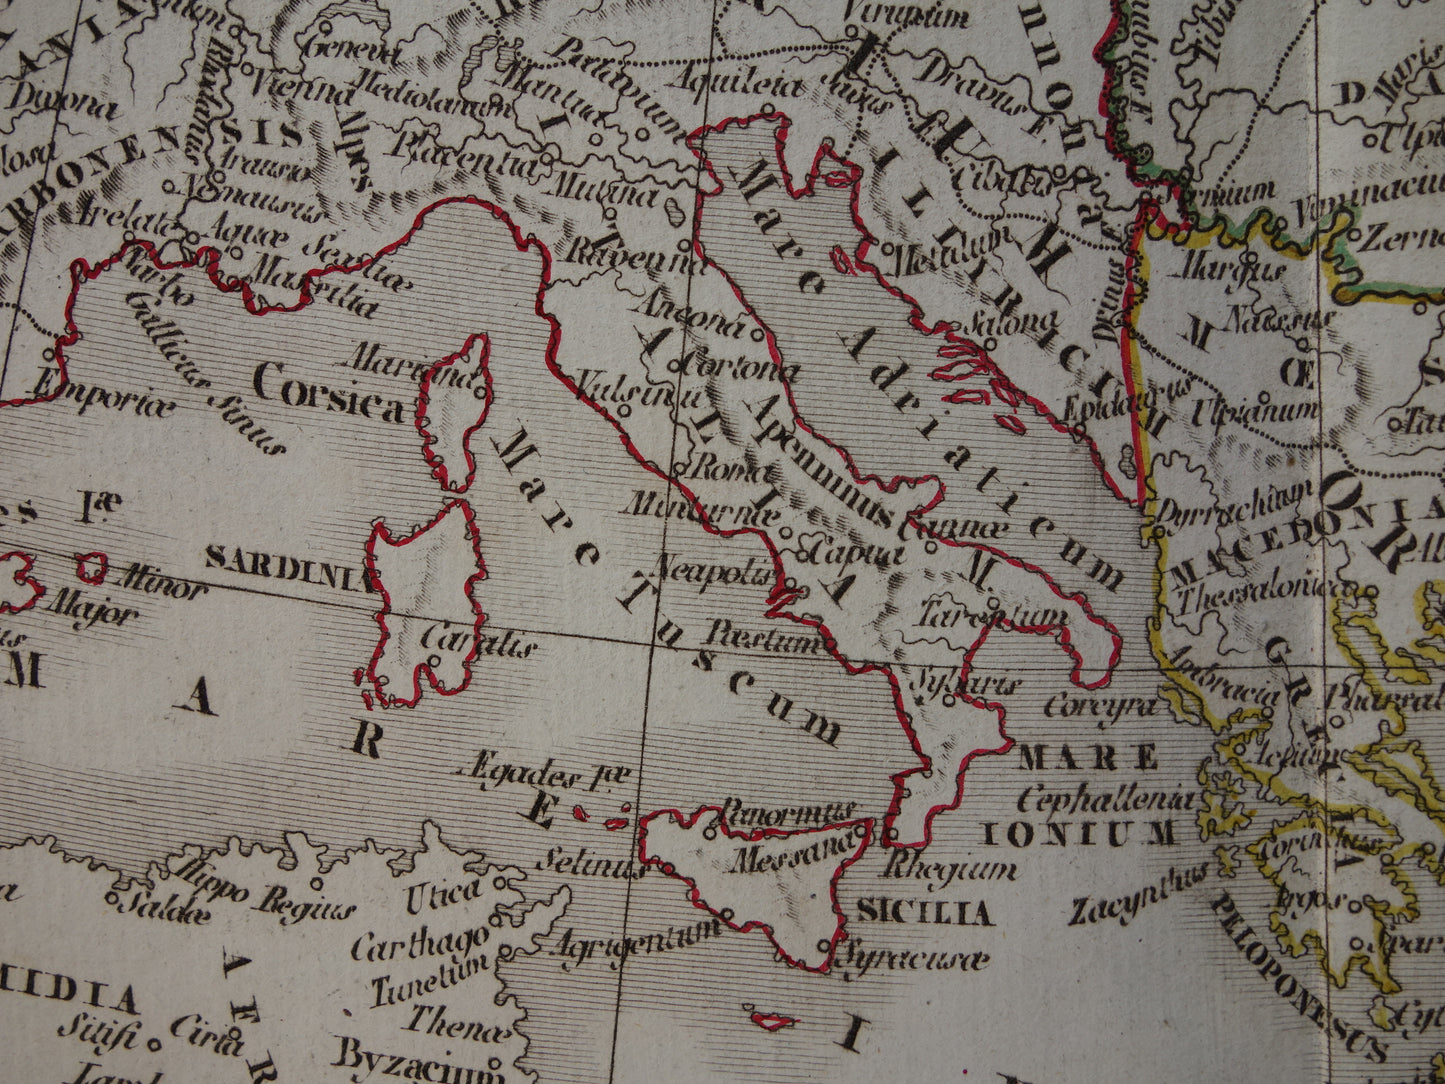 Romeinse Rijk Oude kaart EUROPA rond jaar 395 Antieke landkaart van continent eind 4e eeuw originele vintage historische kaarten